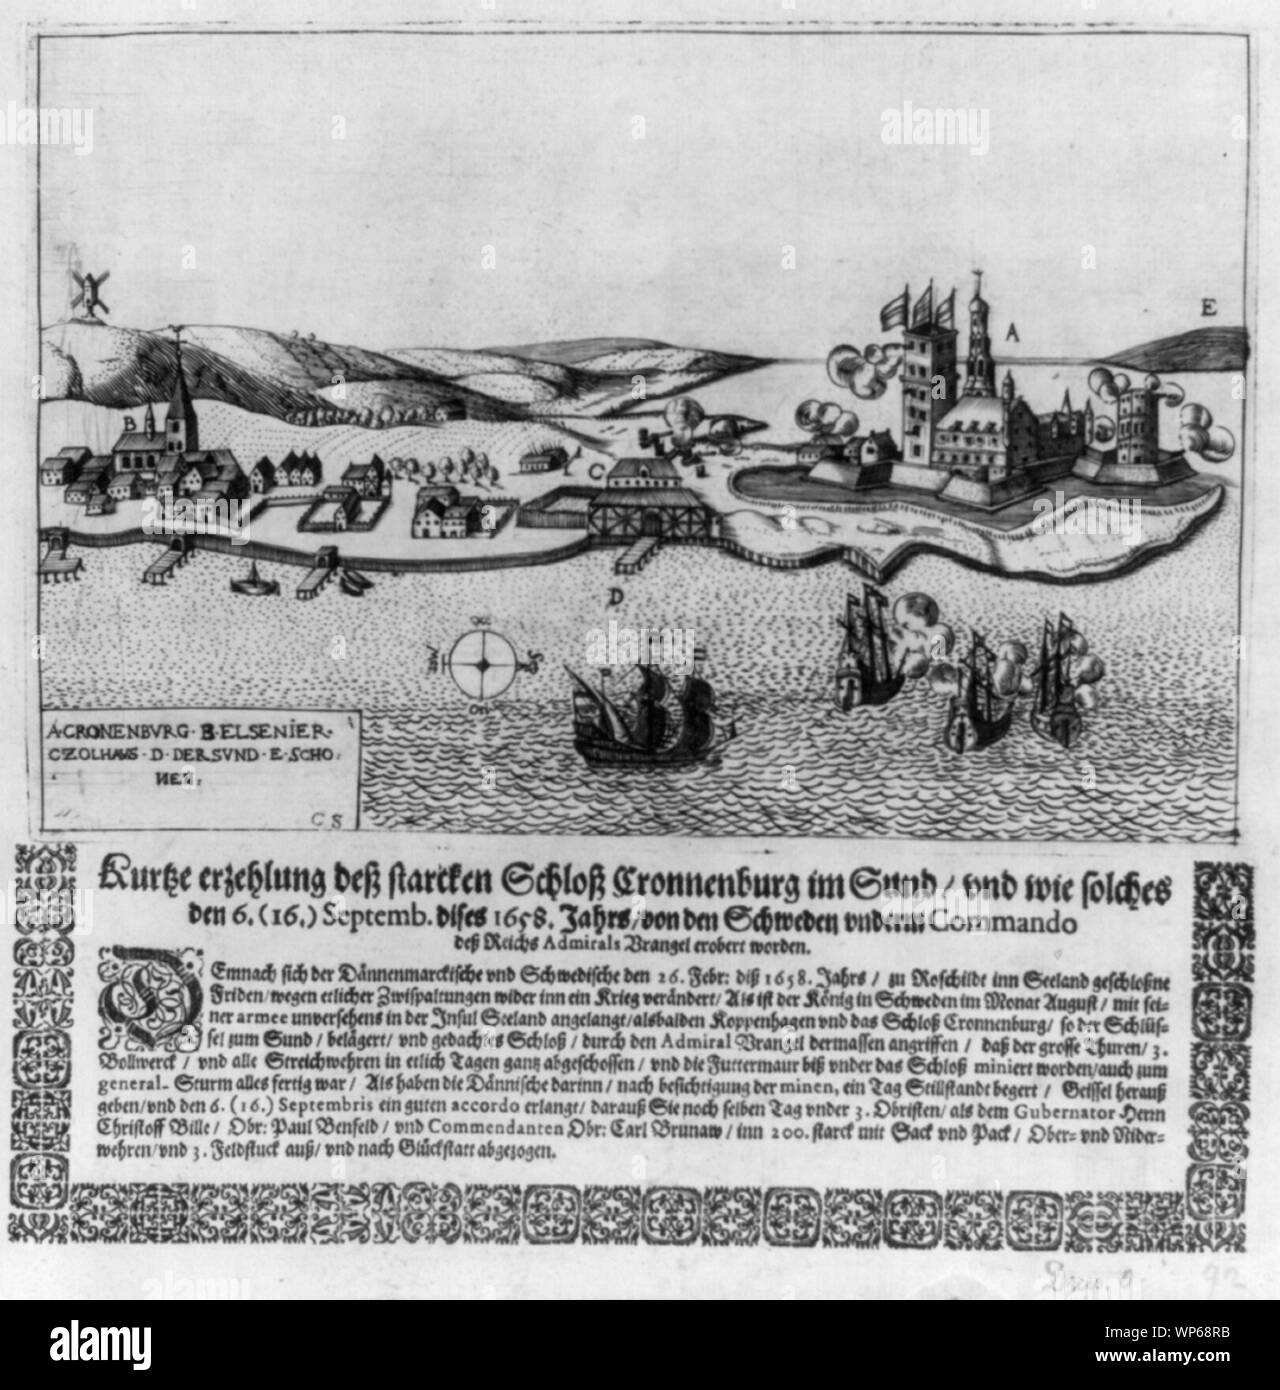 Kurtze erzehlung dess starcken Schloss Cronnenburg im Sund Vnd wie solcehs den 6. (16.) Septemb. This 1658 Jahrs von den Schweden vnderm Commando dess Reichs Admirals Wrangel erobert worden. Stockfoto